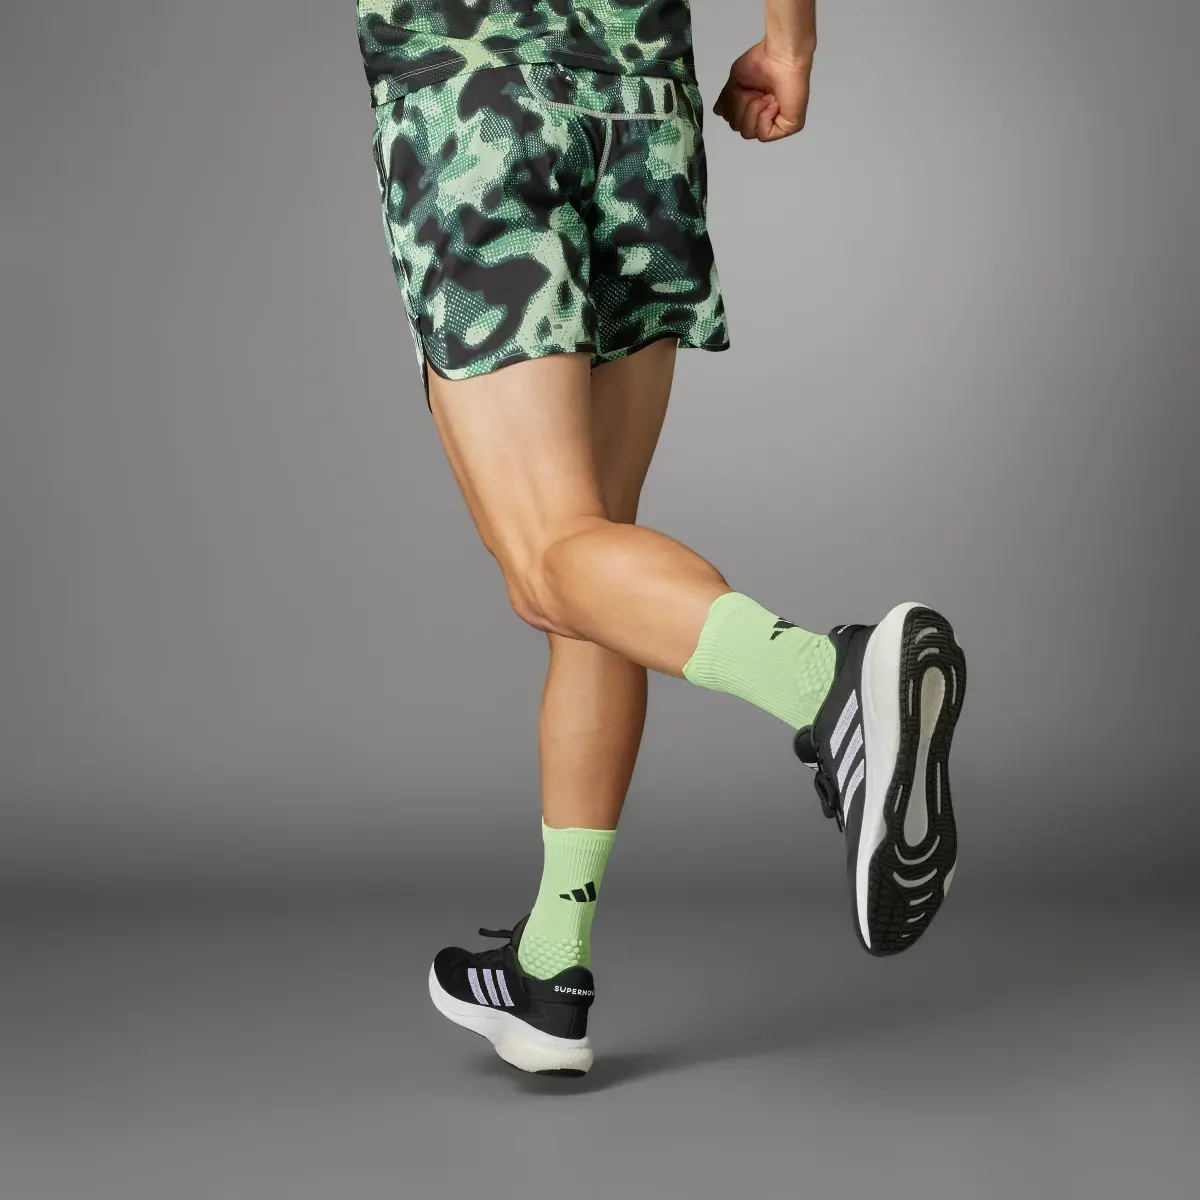 Adidas Own the Run 3-Stripes Allover Print Shorts. 2